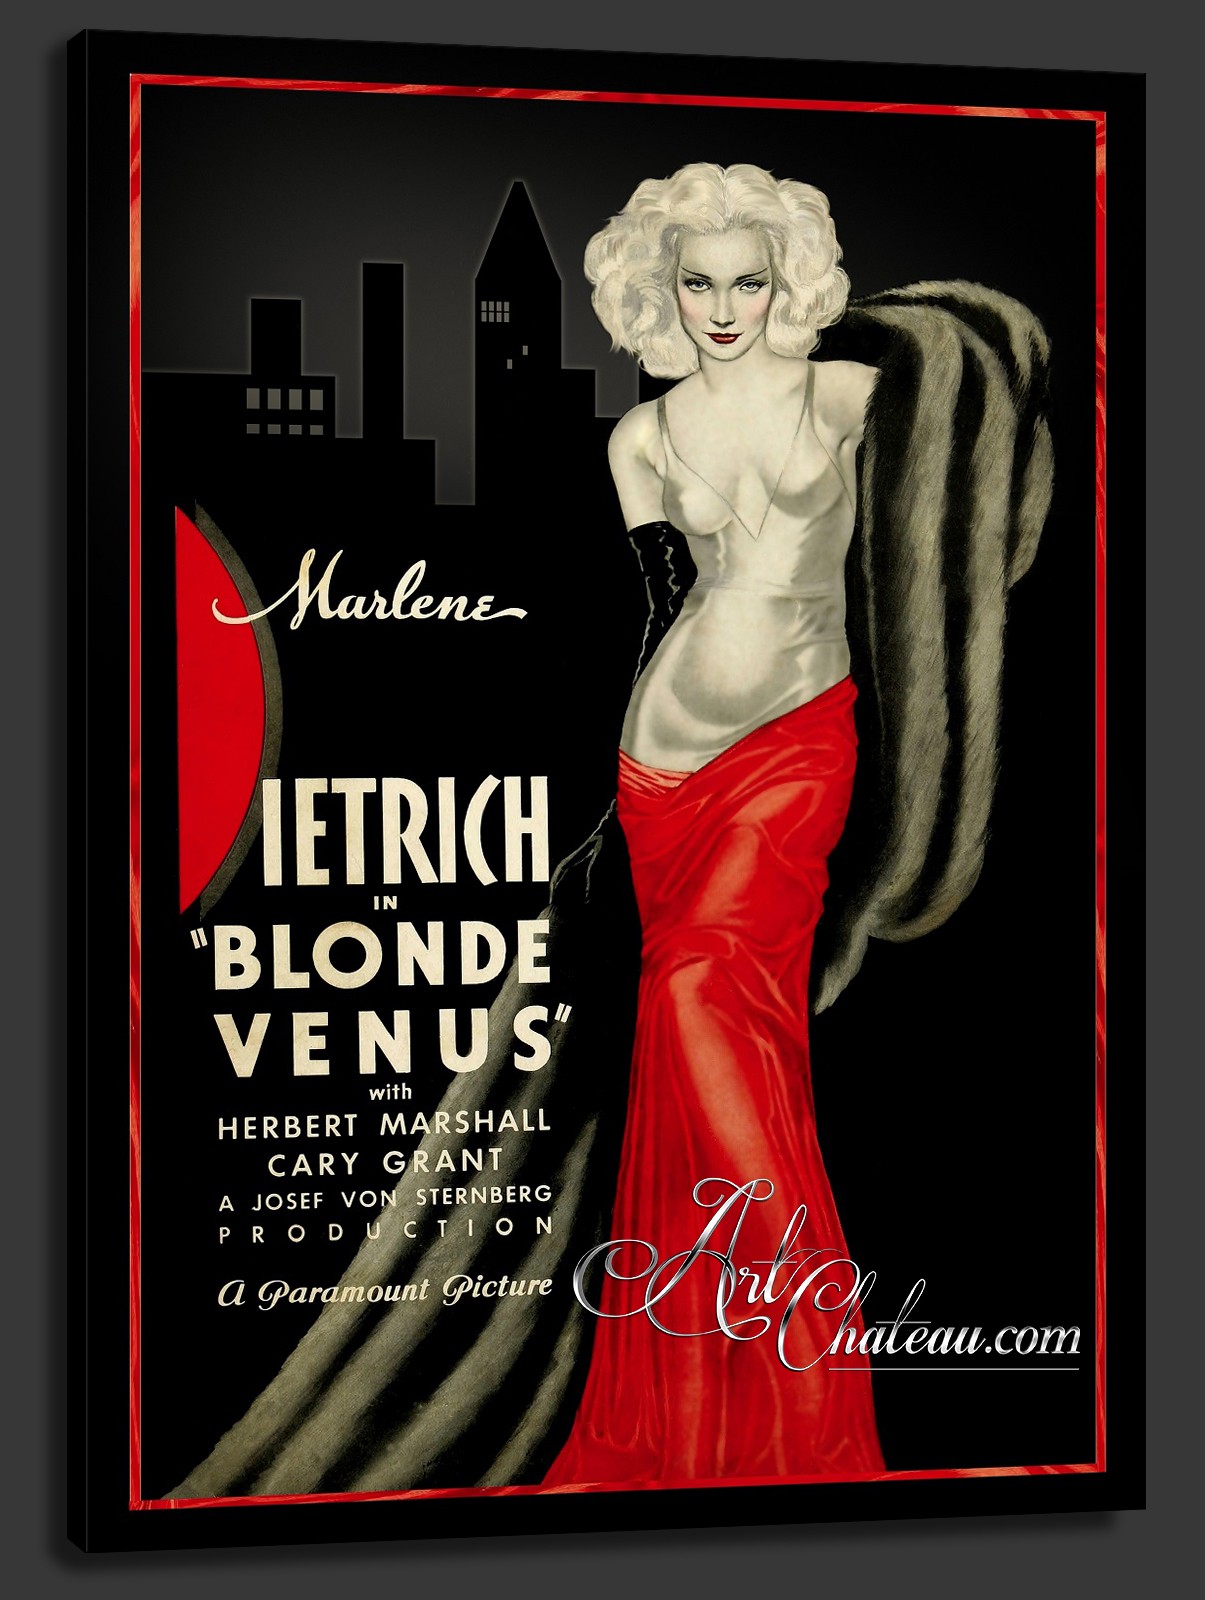 Vintage Movie Poster, Blonde Venus with Marlene Dietrich